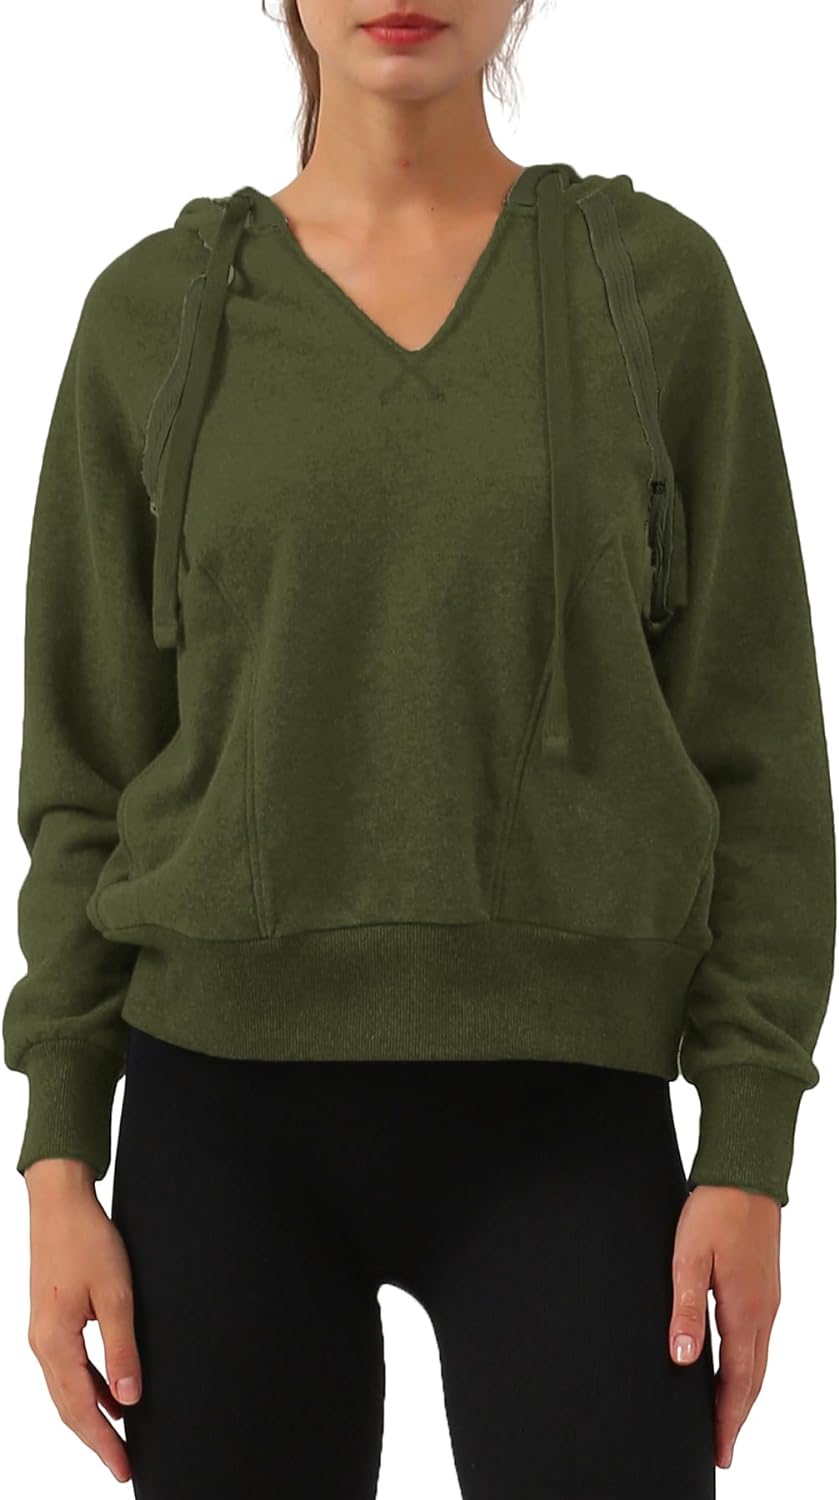 NTG Fad Green / Medium Long Sleeve Hoodie with Pockets Hooded Sweatshirt